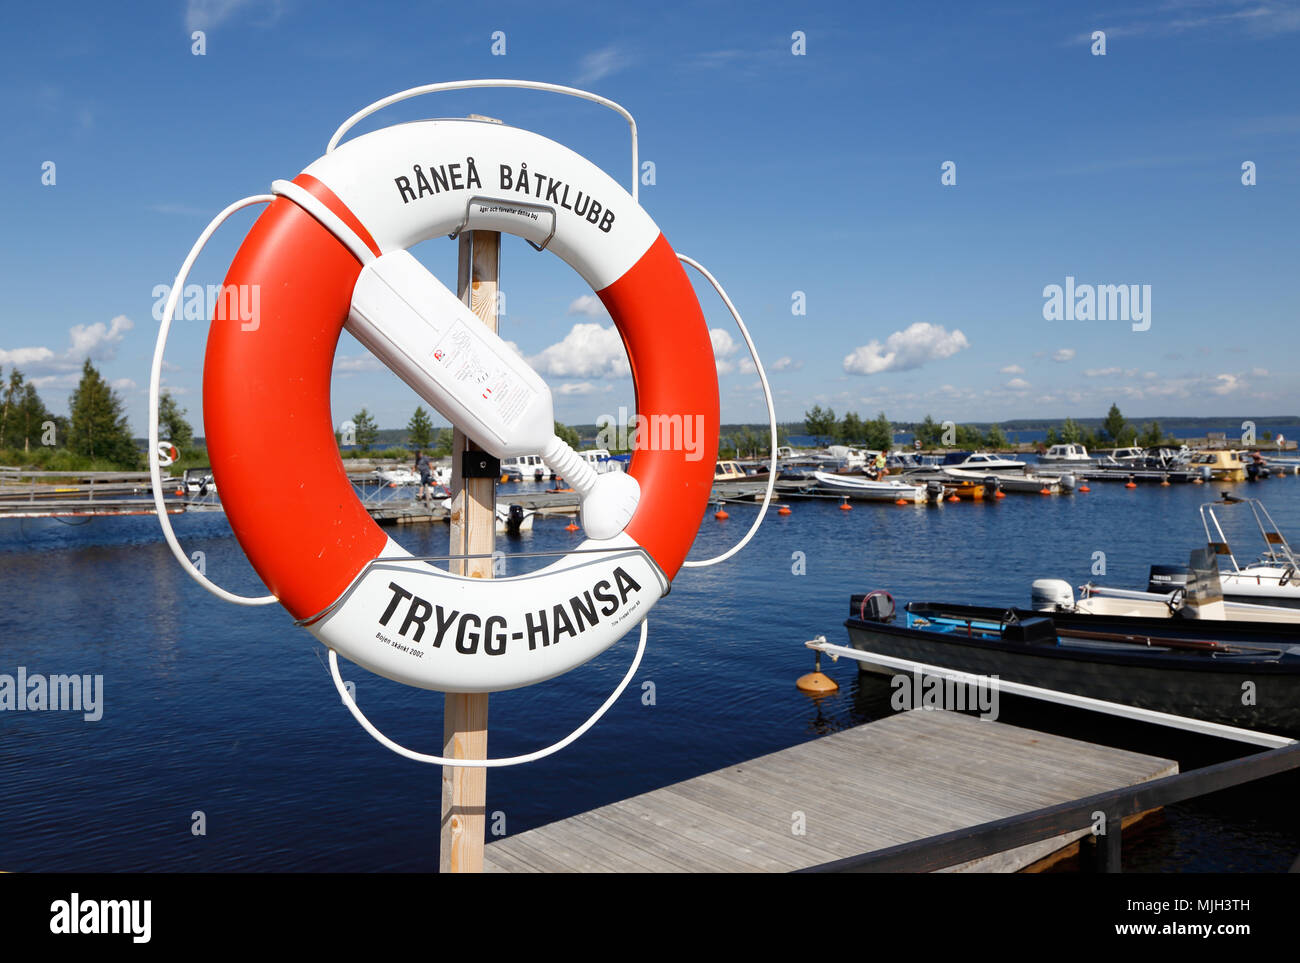 Ranea, Schweden - 23. Juli 2016: mit einem roten und weißen Rettungsring an  kangson Marina beschriftet mit der Versicherungsgesellschaft Trygg-Hansa  Marke Stockfotografie - Alamy